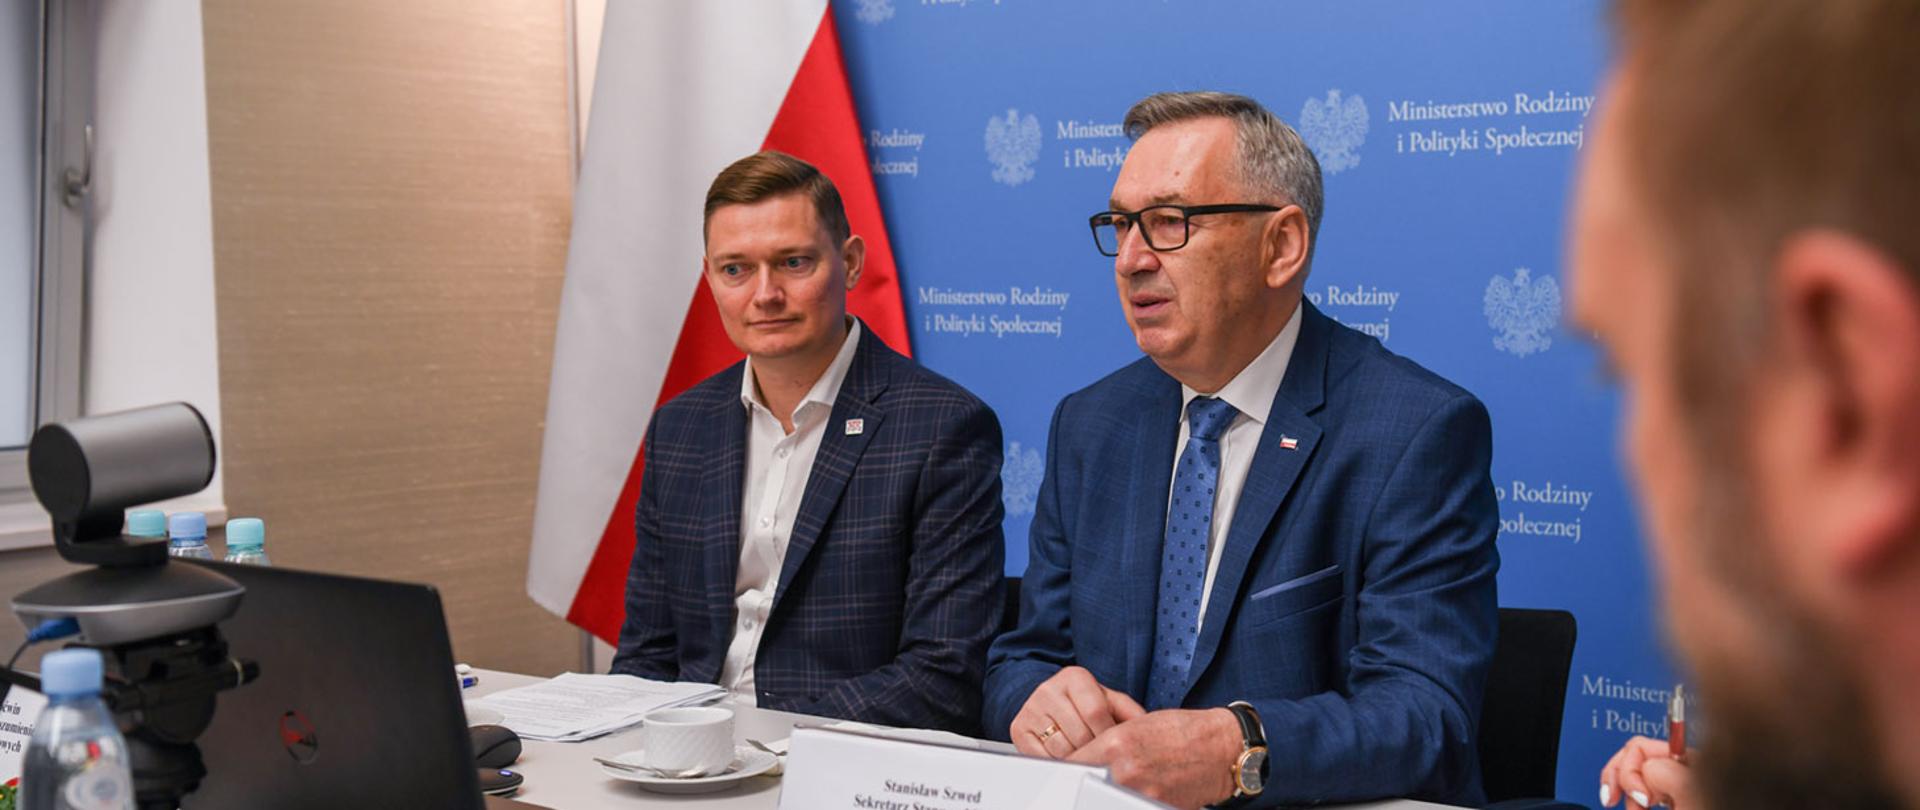 Zdjęcie przy stole. Widoczni dwaj mężczyźni. Jeden z nich to minister Szwed. W tle niebieski baner z logiem Ministerstwa Rodziny i Polityki Społecznej.